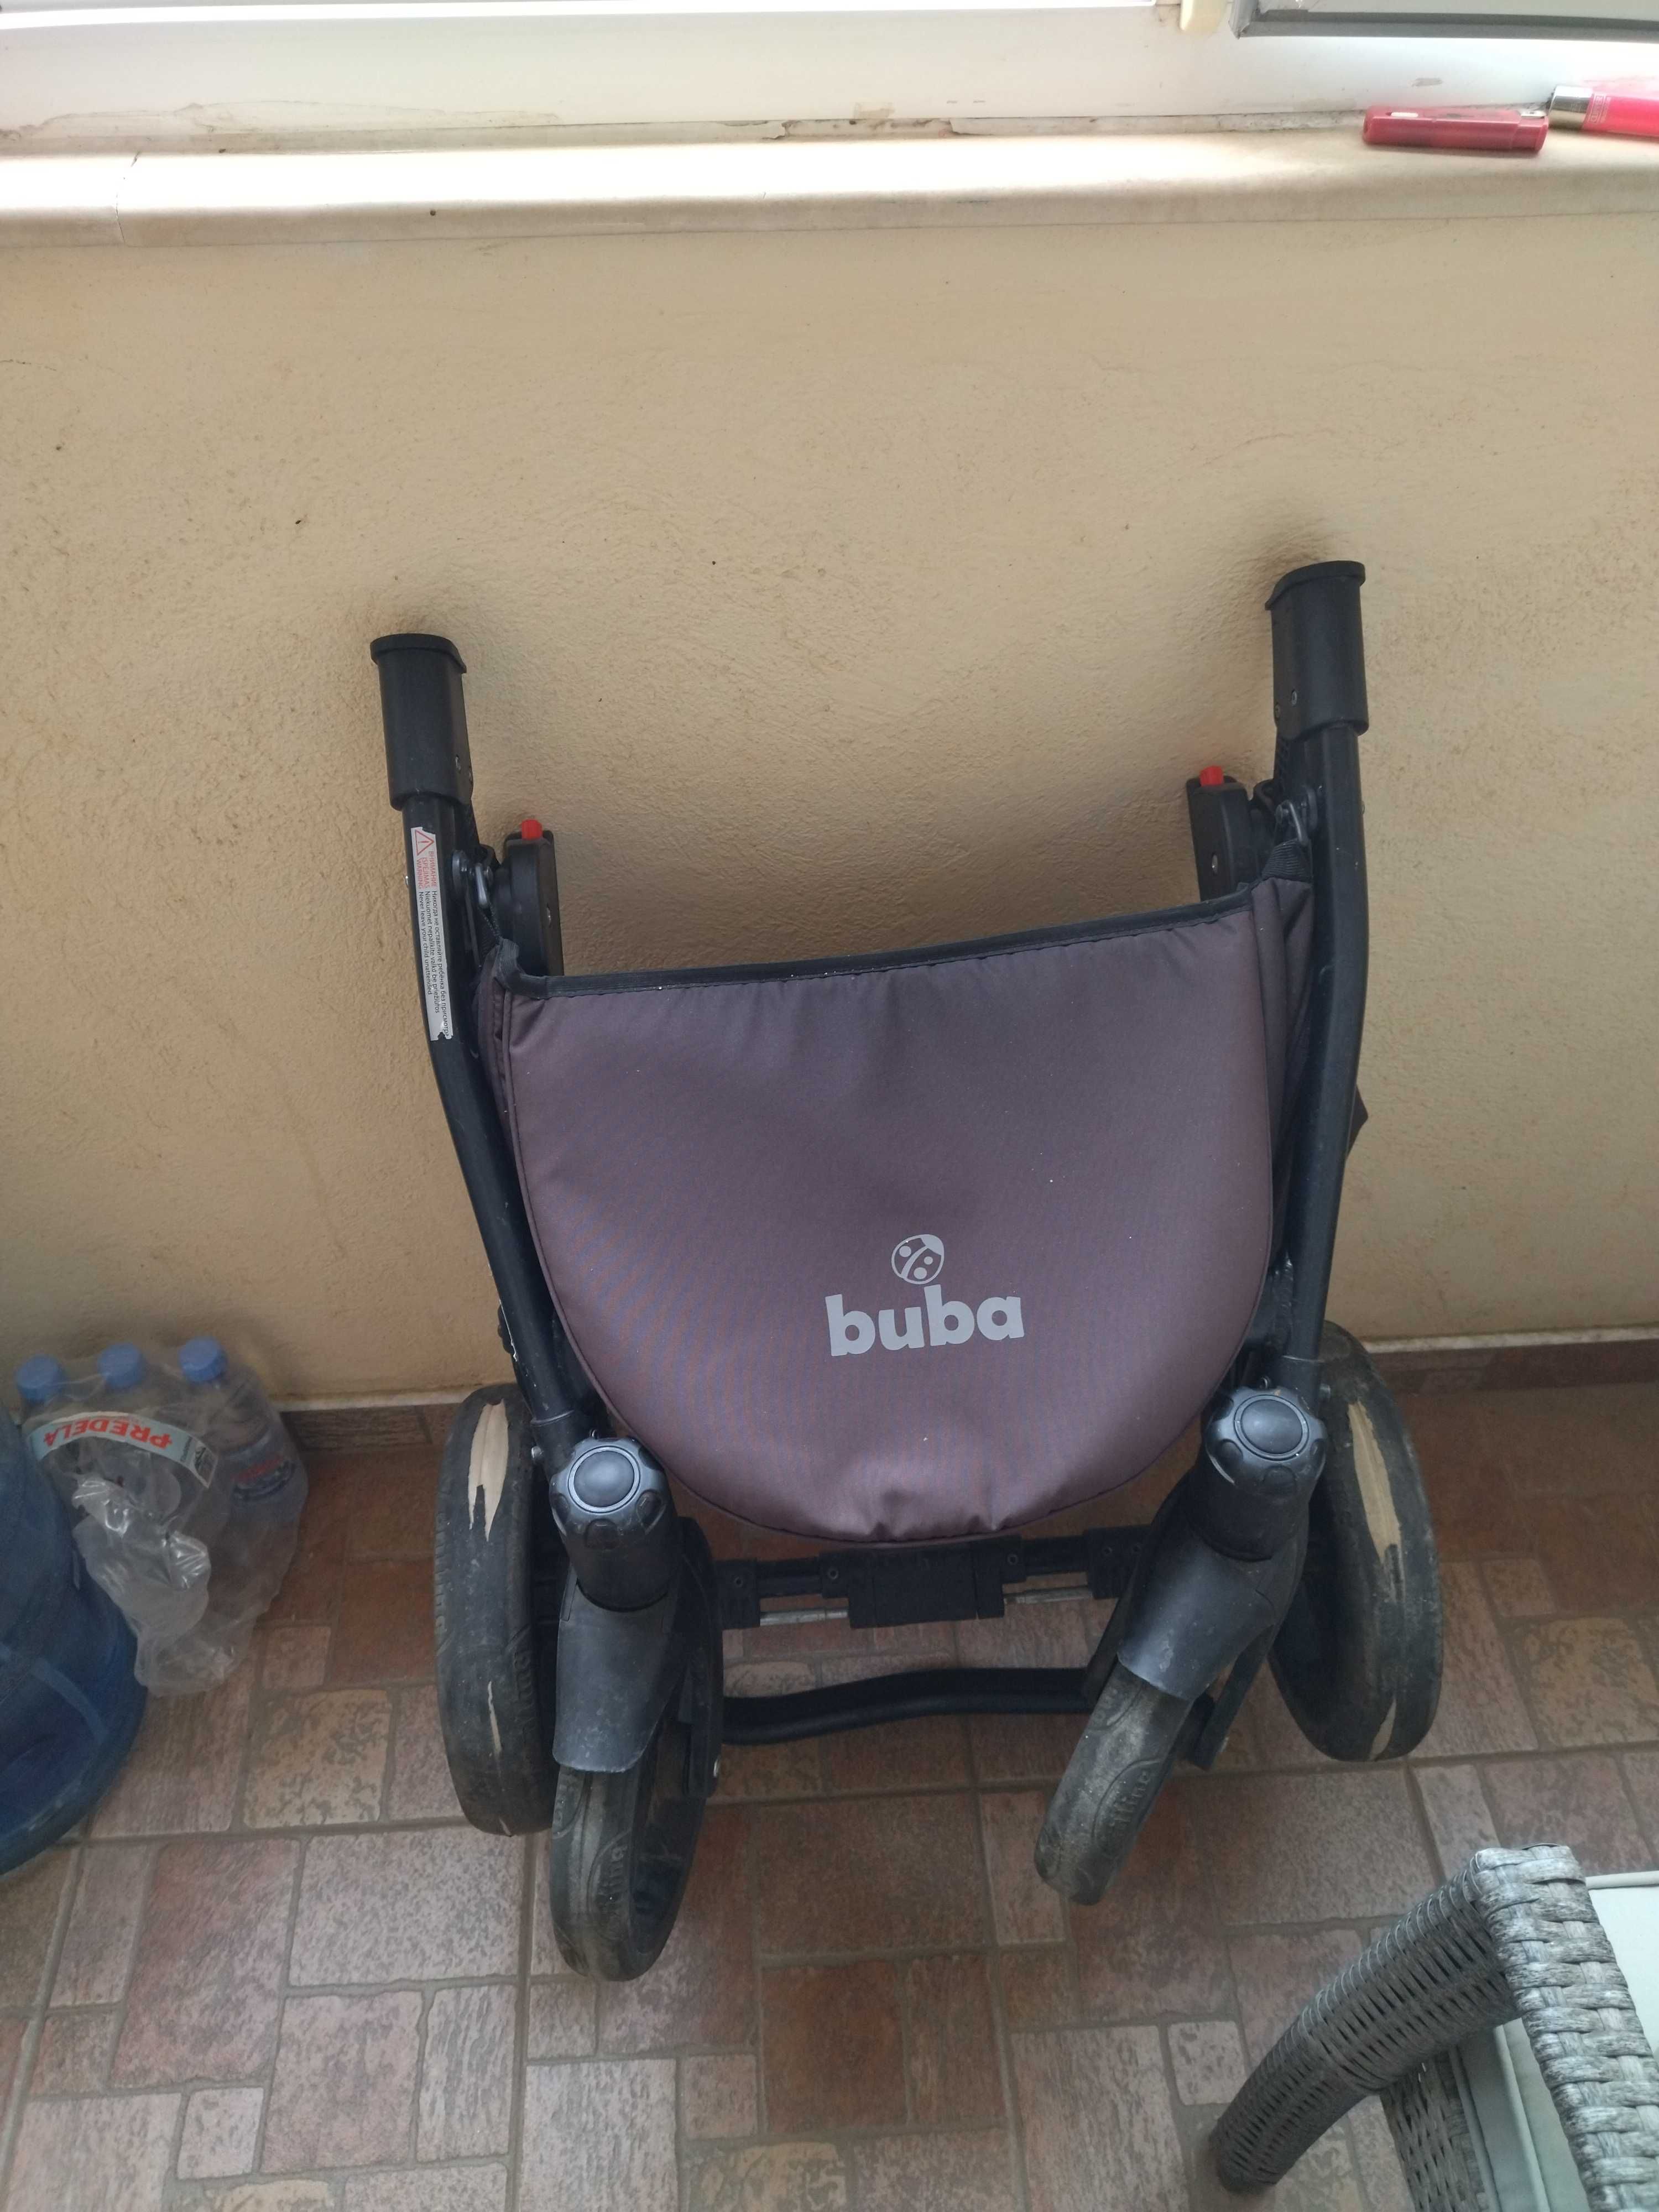 Бебешка количка Buba Forester